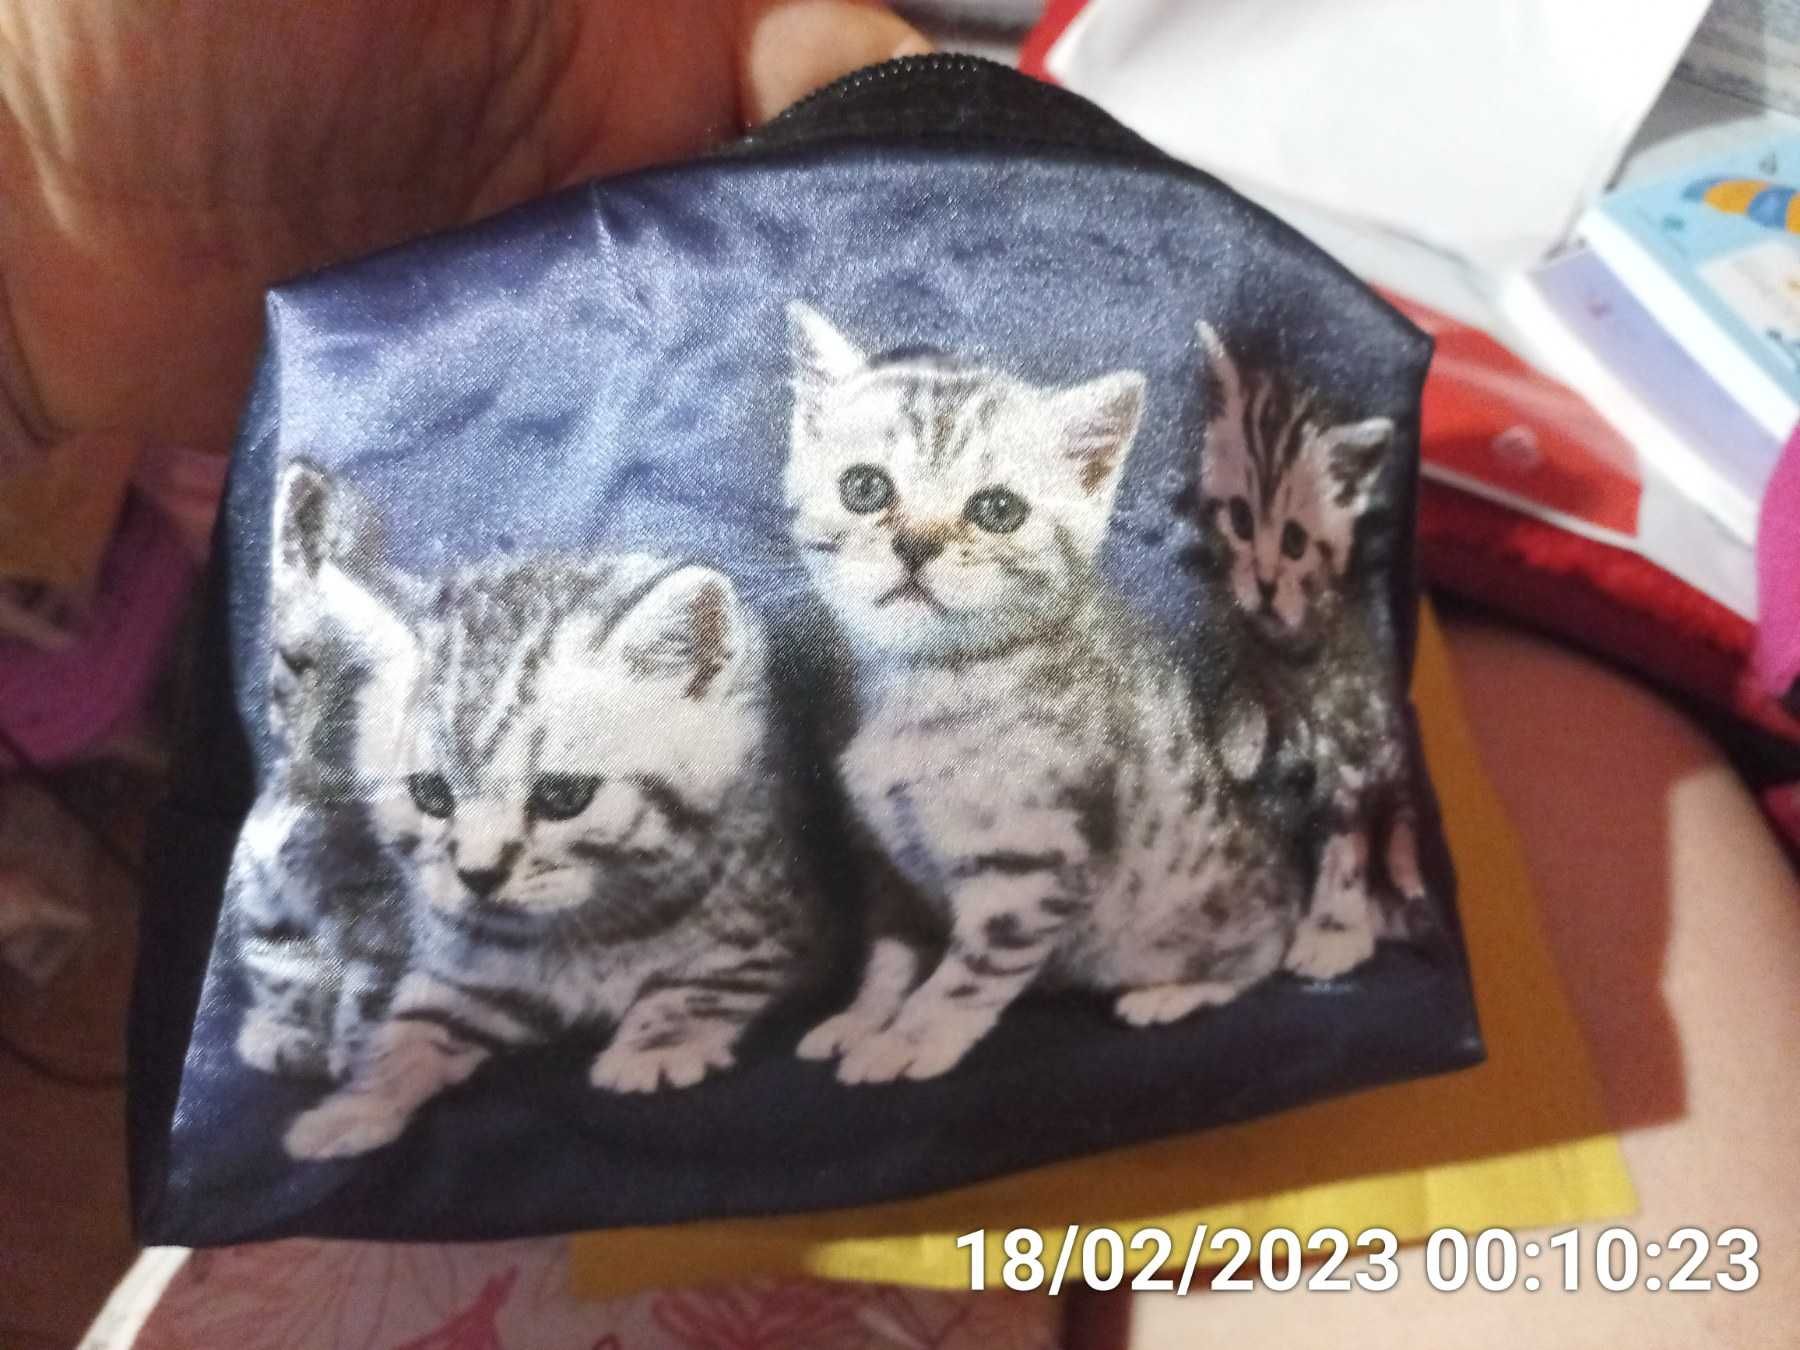 косметичка органайзер сумочка принт котята кошка синяя